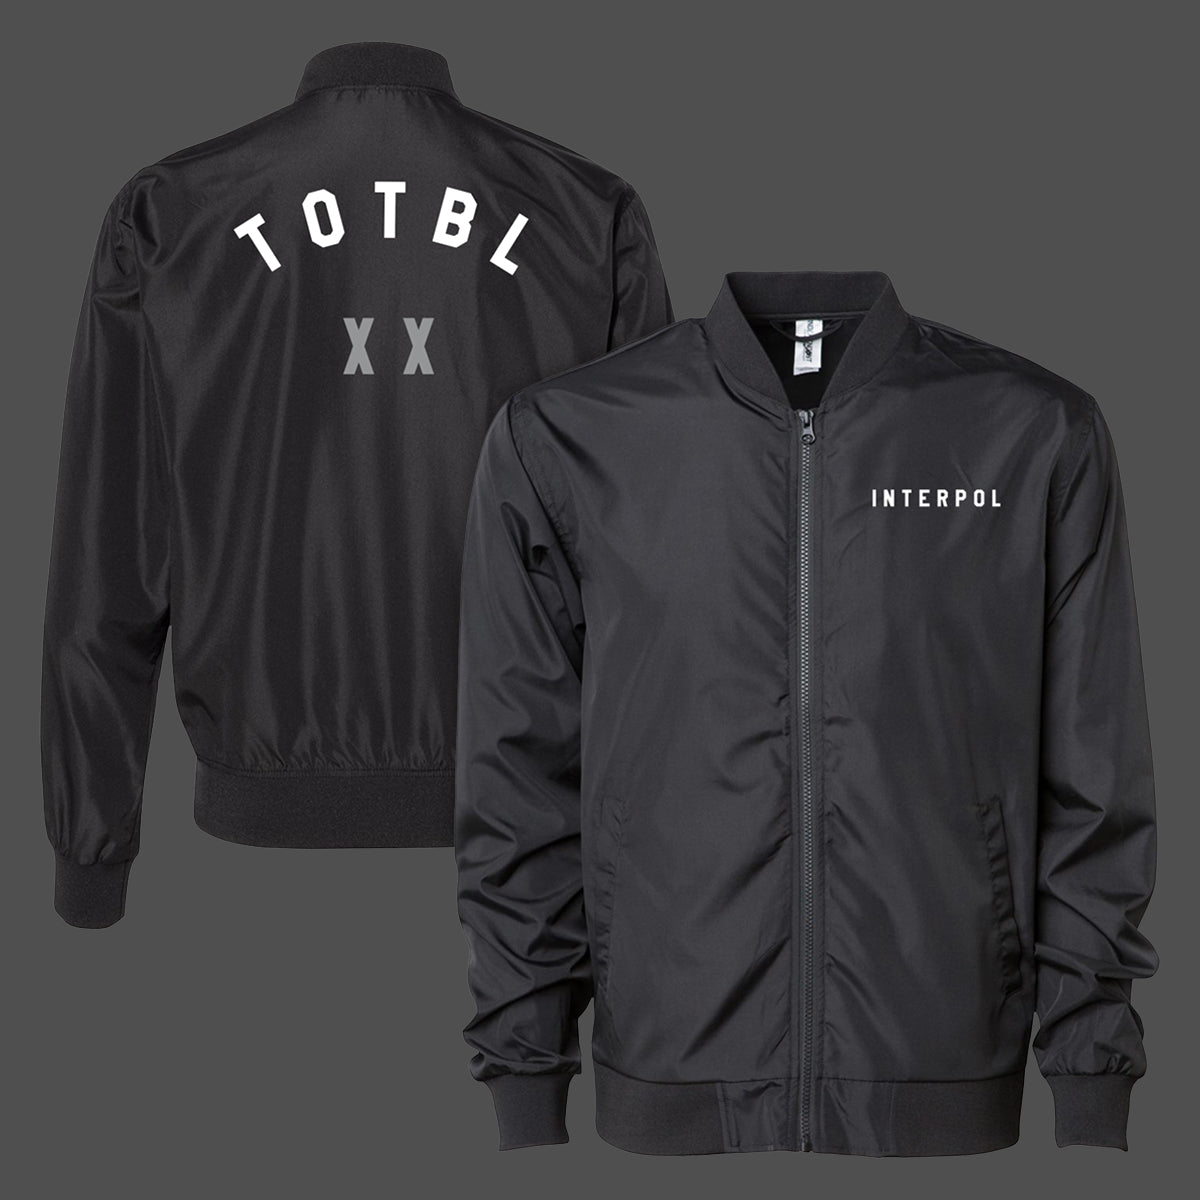 TOTBLXX Bomber Jacket